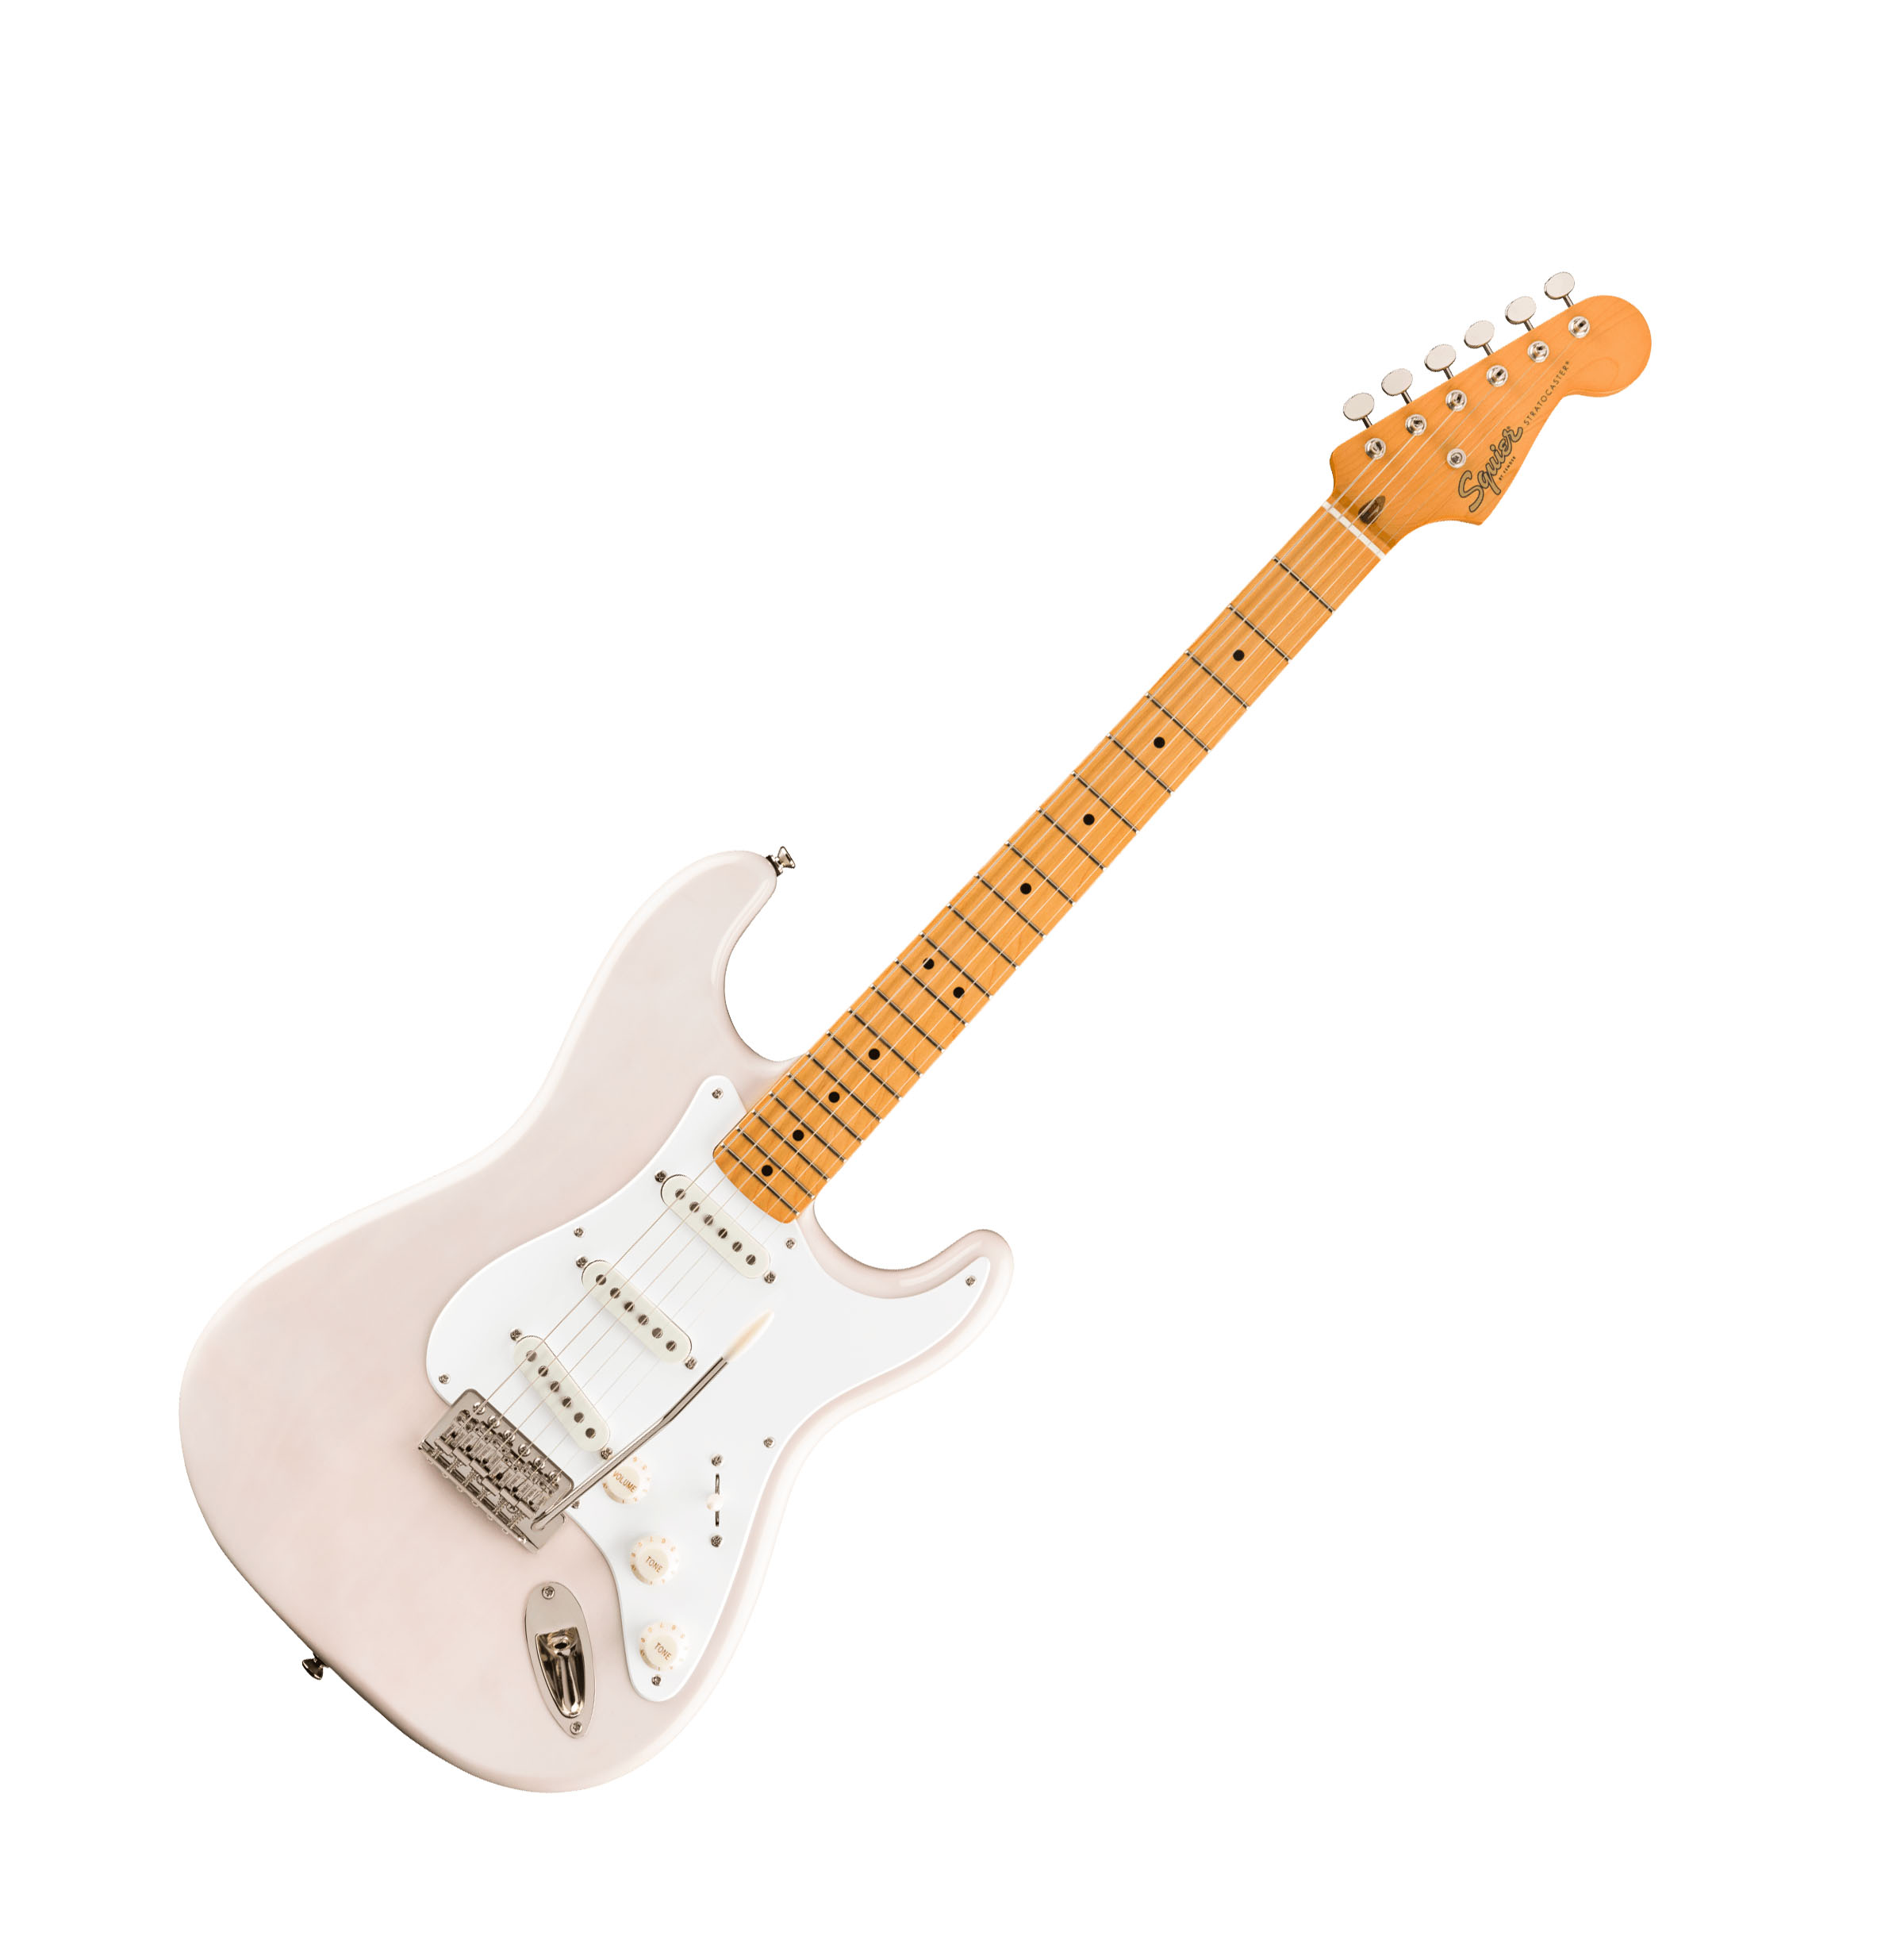 Stratocaster цена. Электрогитара Cort g260cs-ow. Гитара Fender Squier. Электрогитара Fender Deluxe Roadhouse Stratocaster. Fender Stratocaster белый.